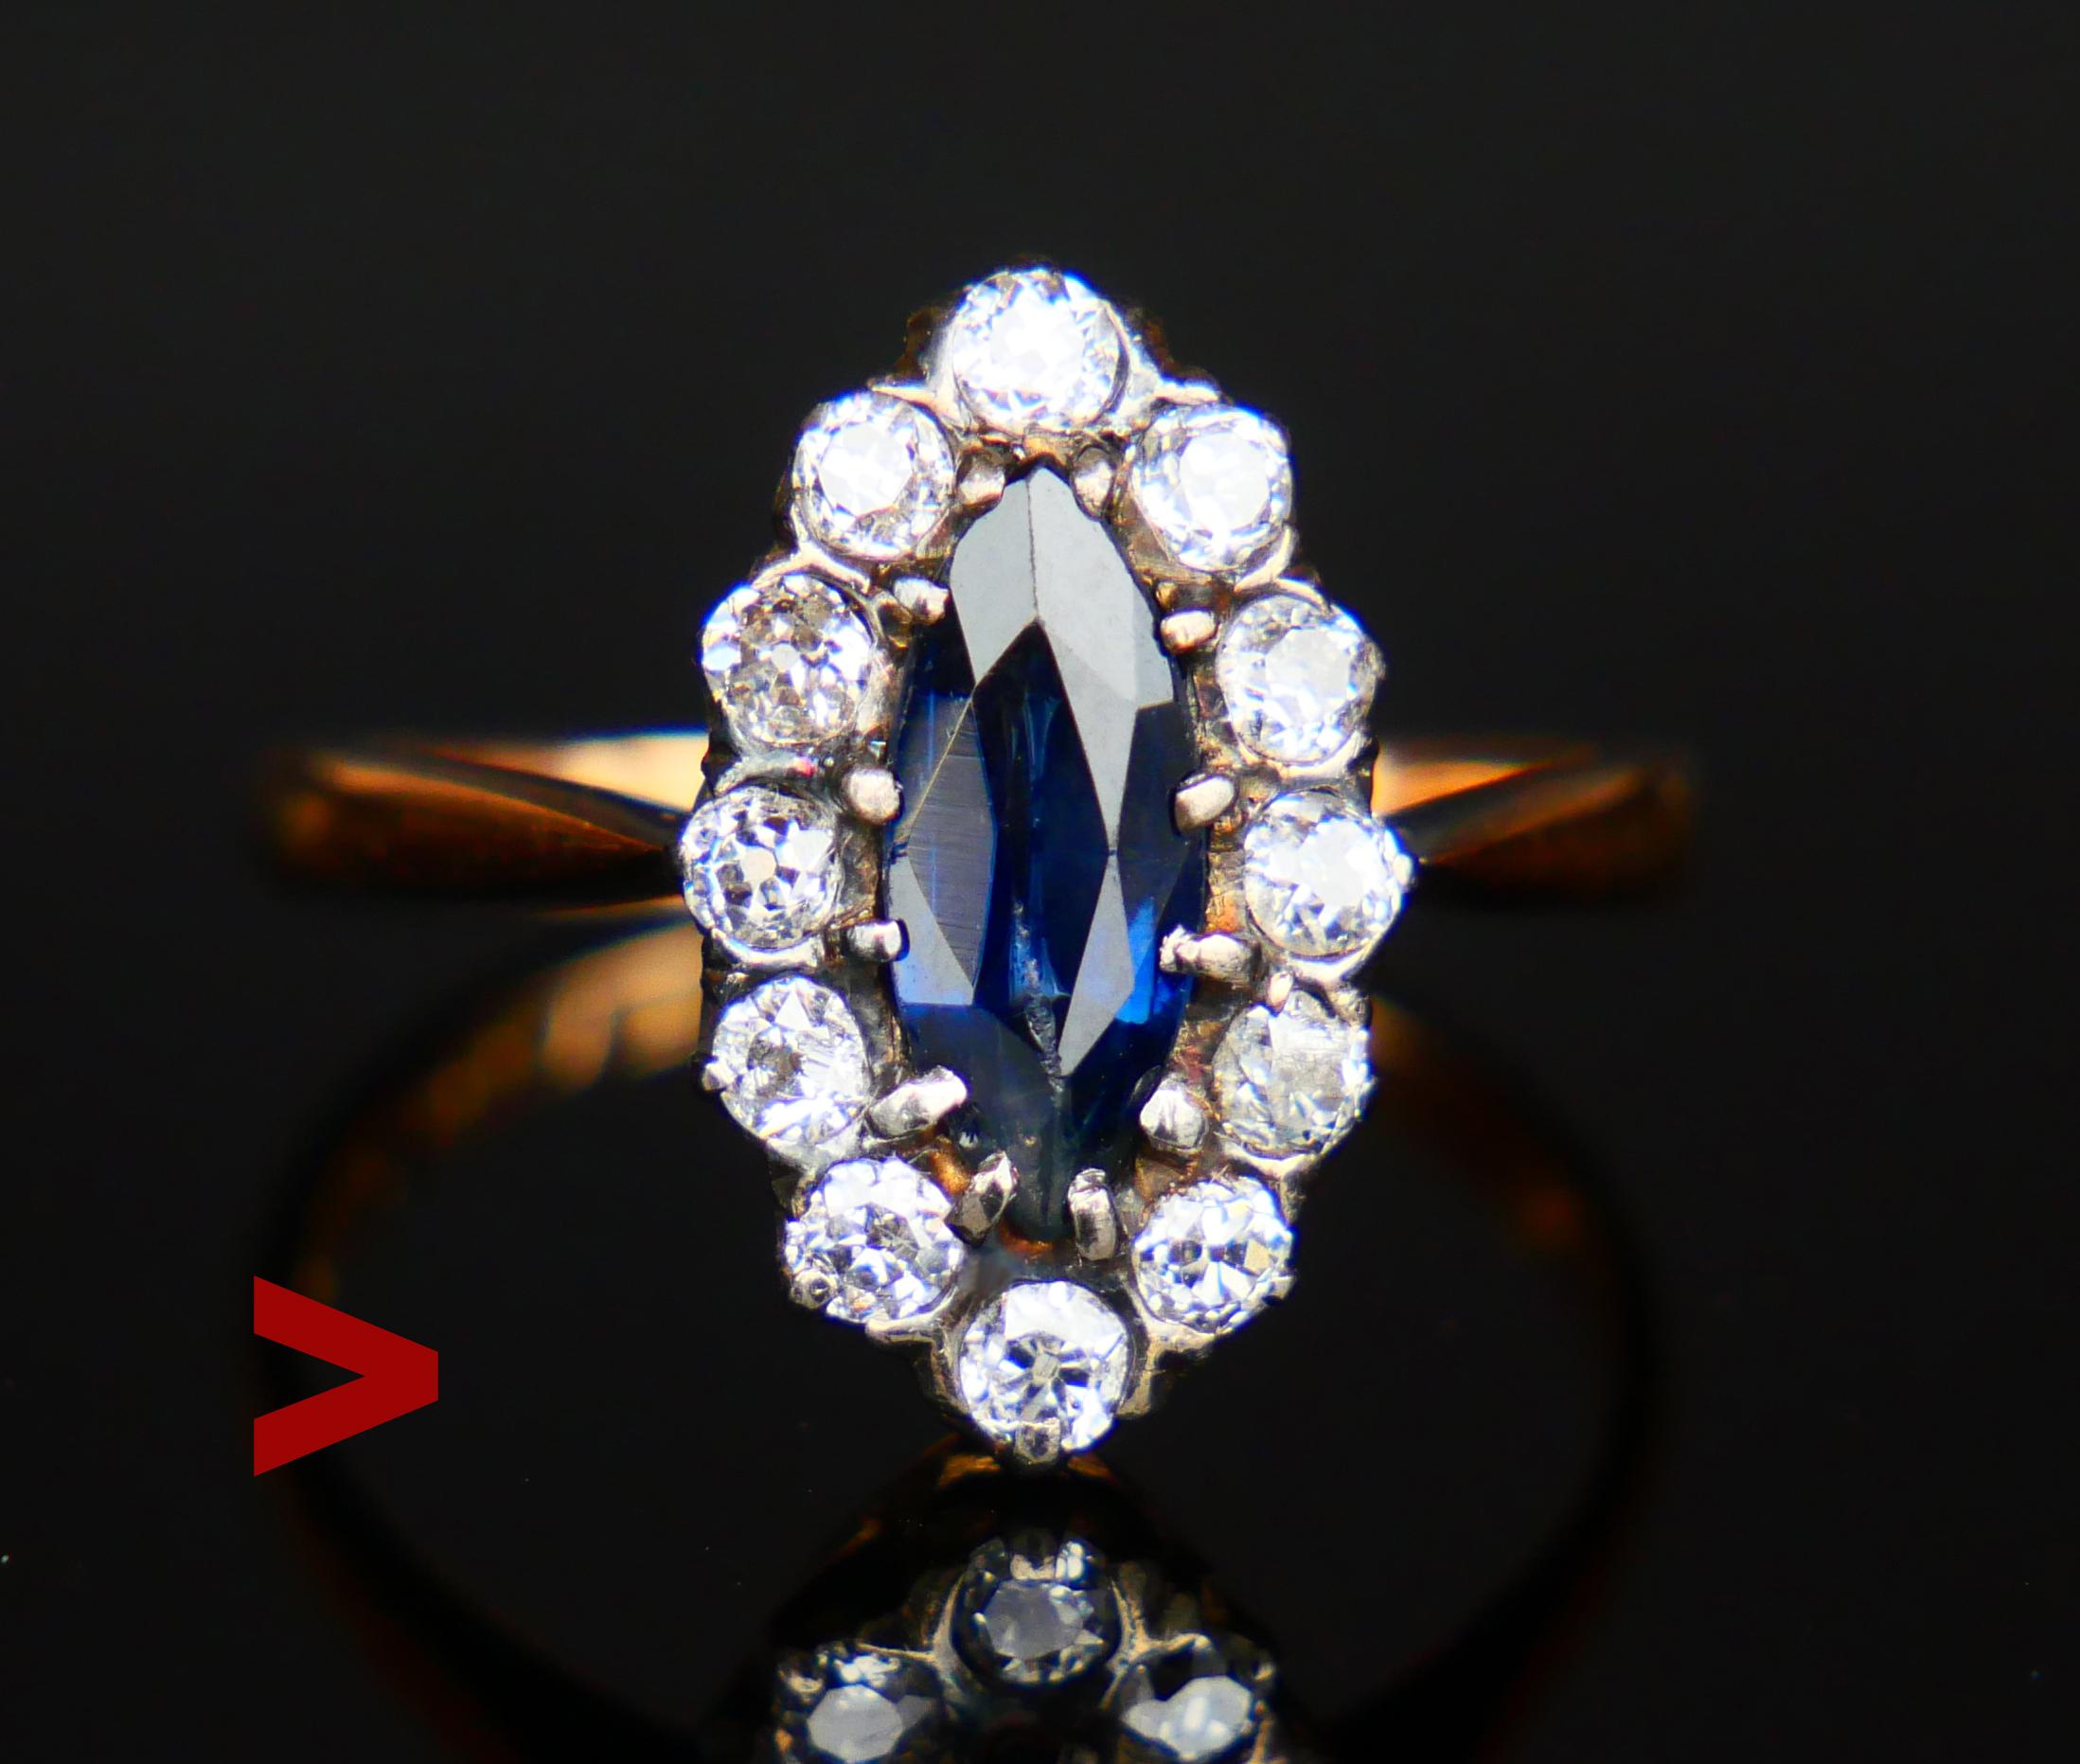 Dieser Ring hat eine navetten- oder schiffsförmige Krone mit Silber- oder Weißgoldclustern, die in eine massive 18-karätige Roségoldbasis eingeschmolzen sind. Der zentrale Stein ist ein natürlicher blauer Saphir im Marquiseschliff, umgeben von 12